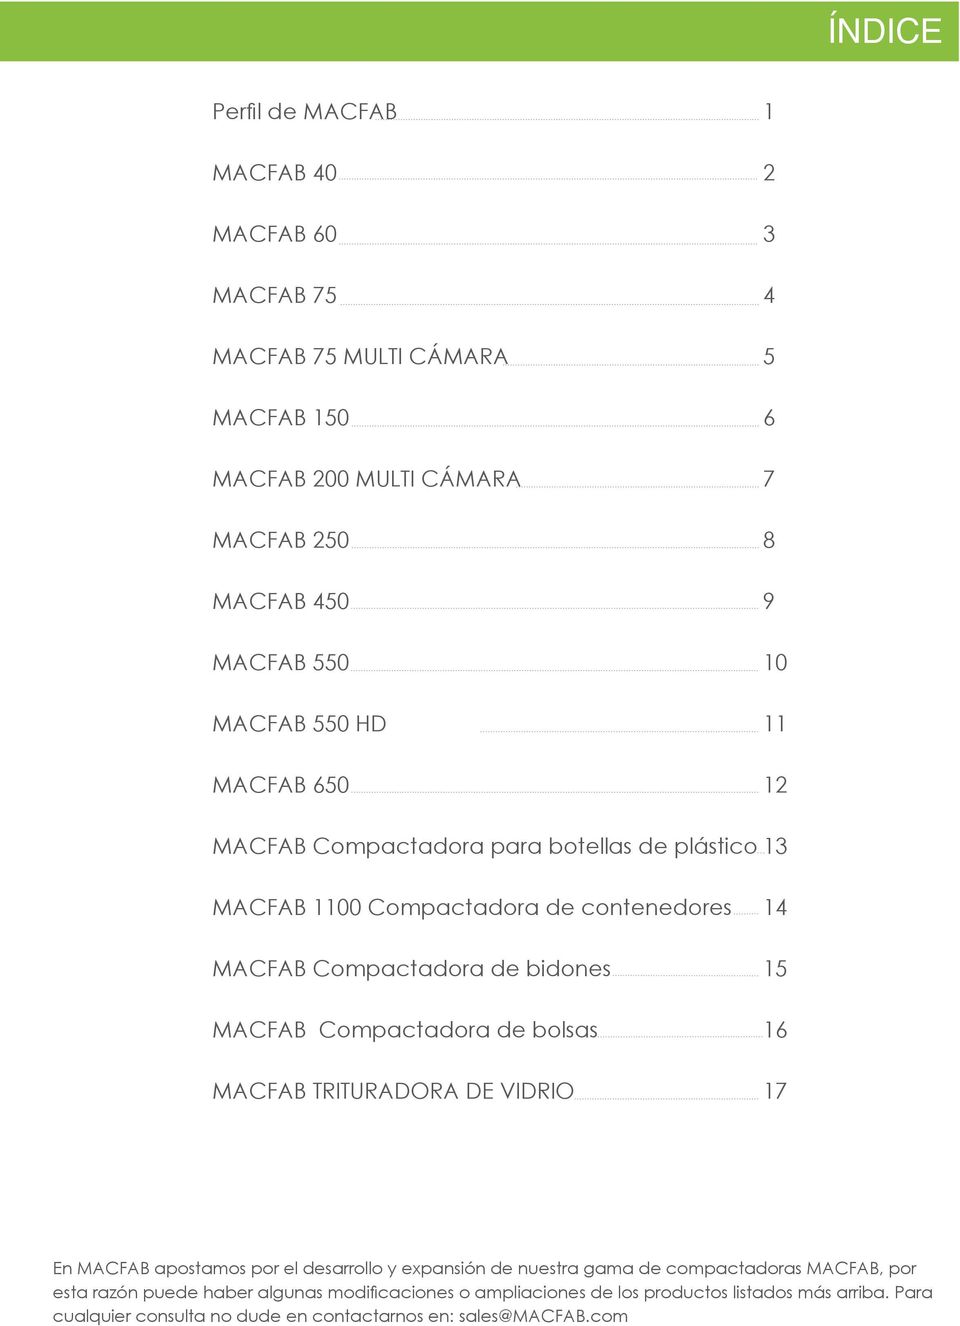 MACFAB Compactadora de bolsas 16 MACFAB TRITURADORA DE VIDRIO 17 En MACFAB apostamos por el desarrollo y expansión de nuestra gama de compactadoras MACFAB, por